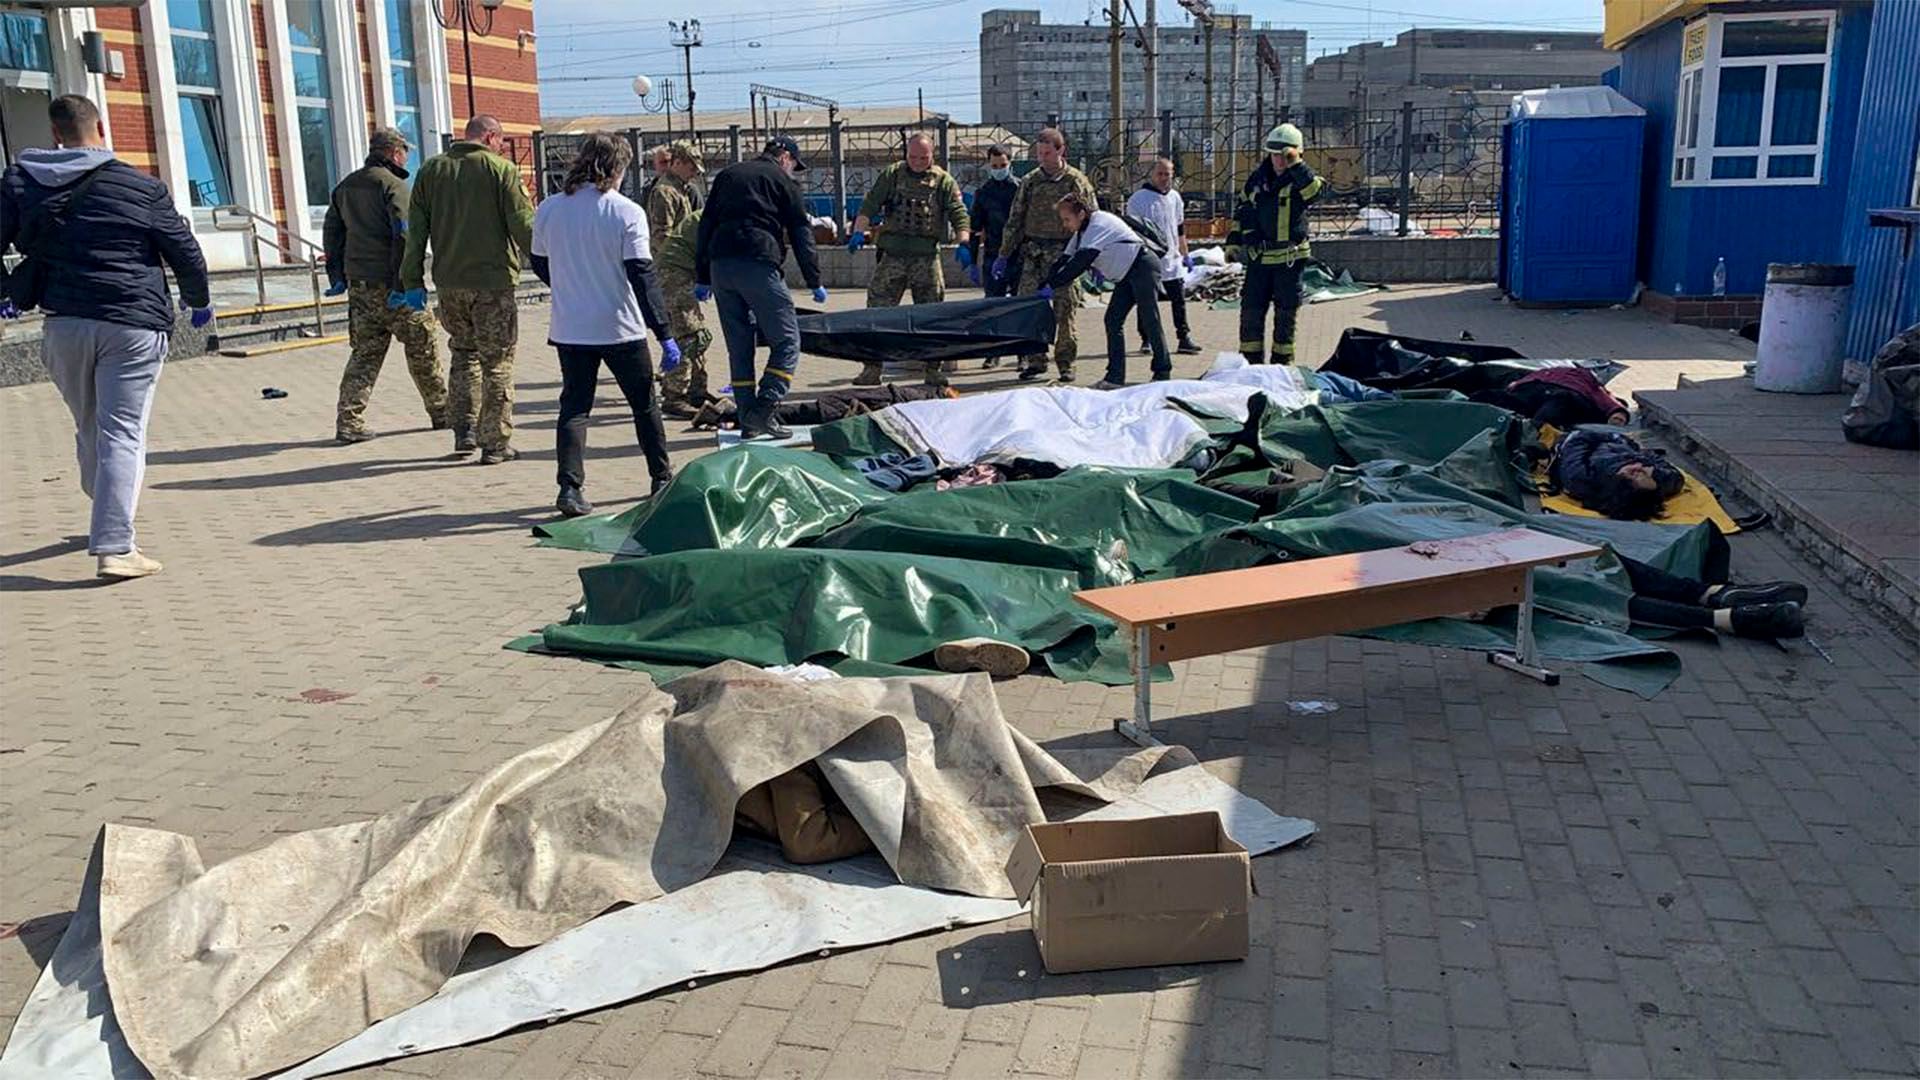 El ataque contra la estación de la ciudad ucraniana de Kramatorsk, en el este del país, dejó decenas de muertos y heridos entre civiles que esperaban para ser evacuados (Hervé BAR / AFP)